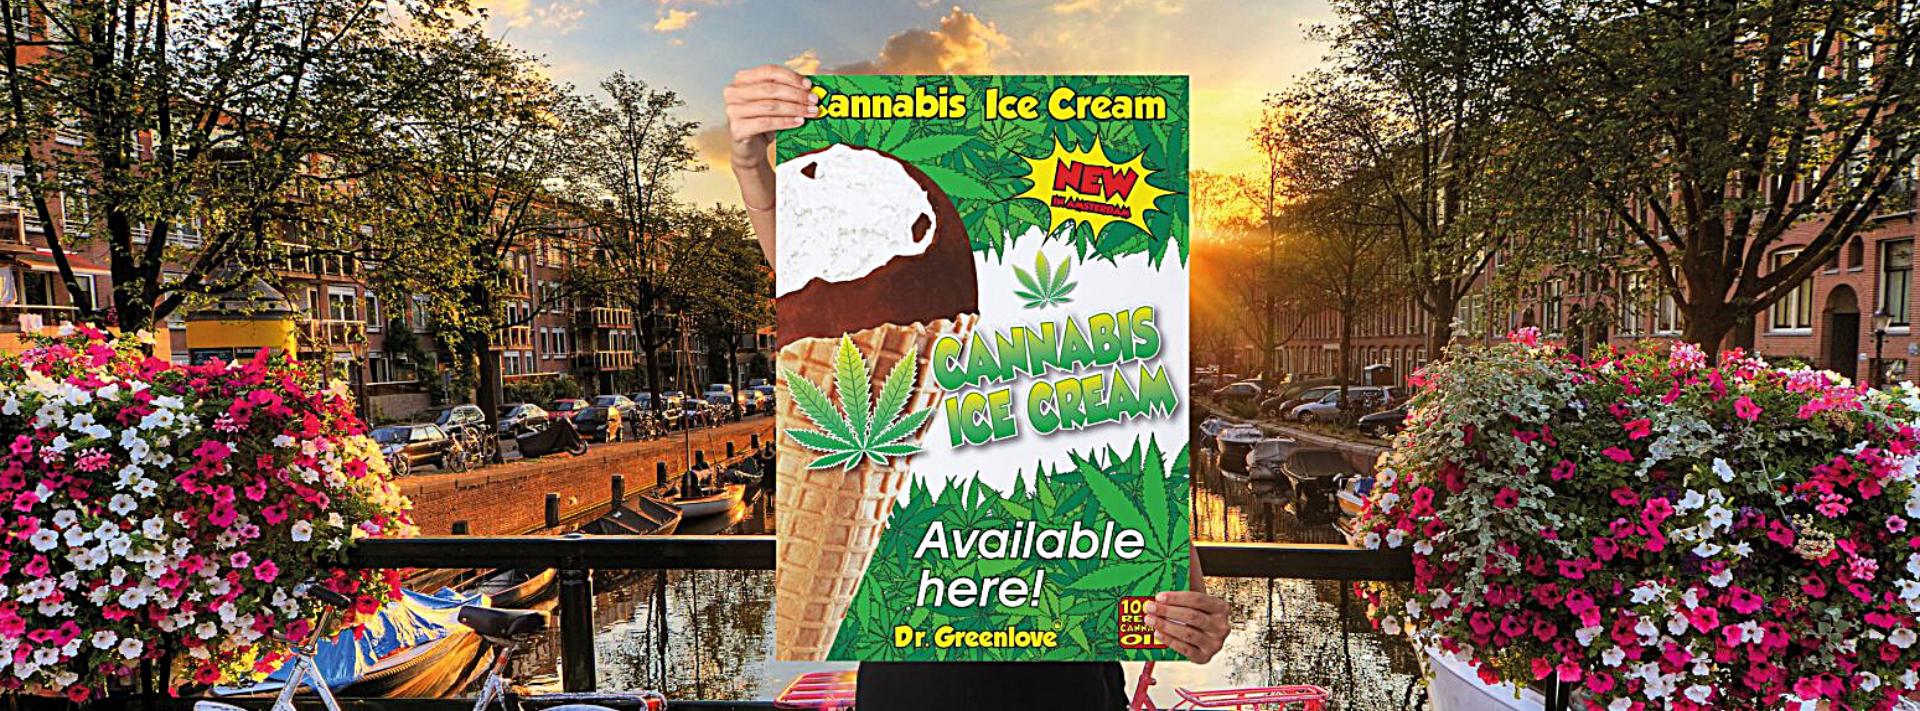 Dr. Greenlove Cannabis Ice Cream Amsterdam Canal